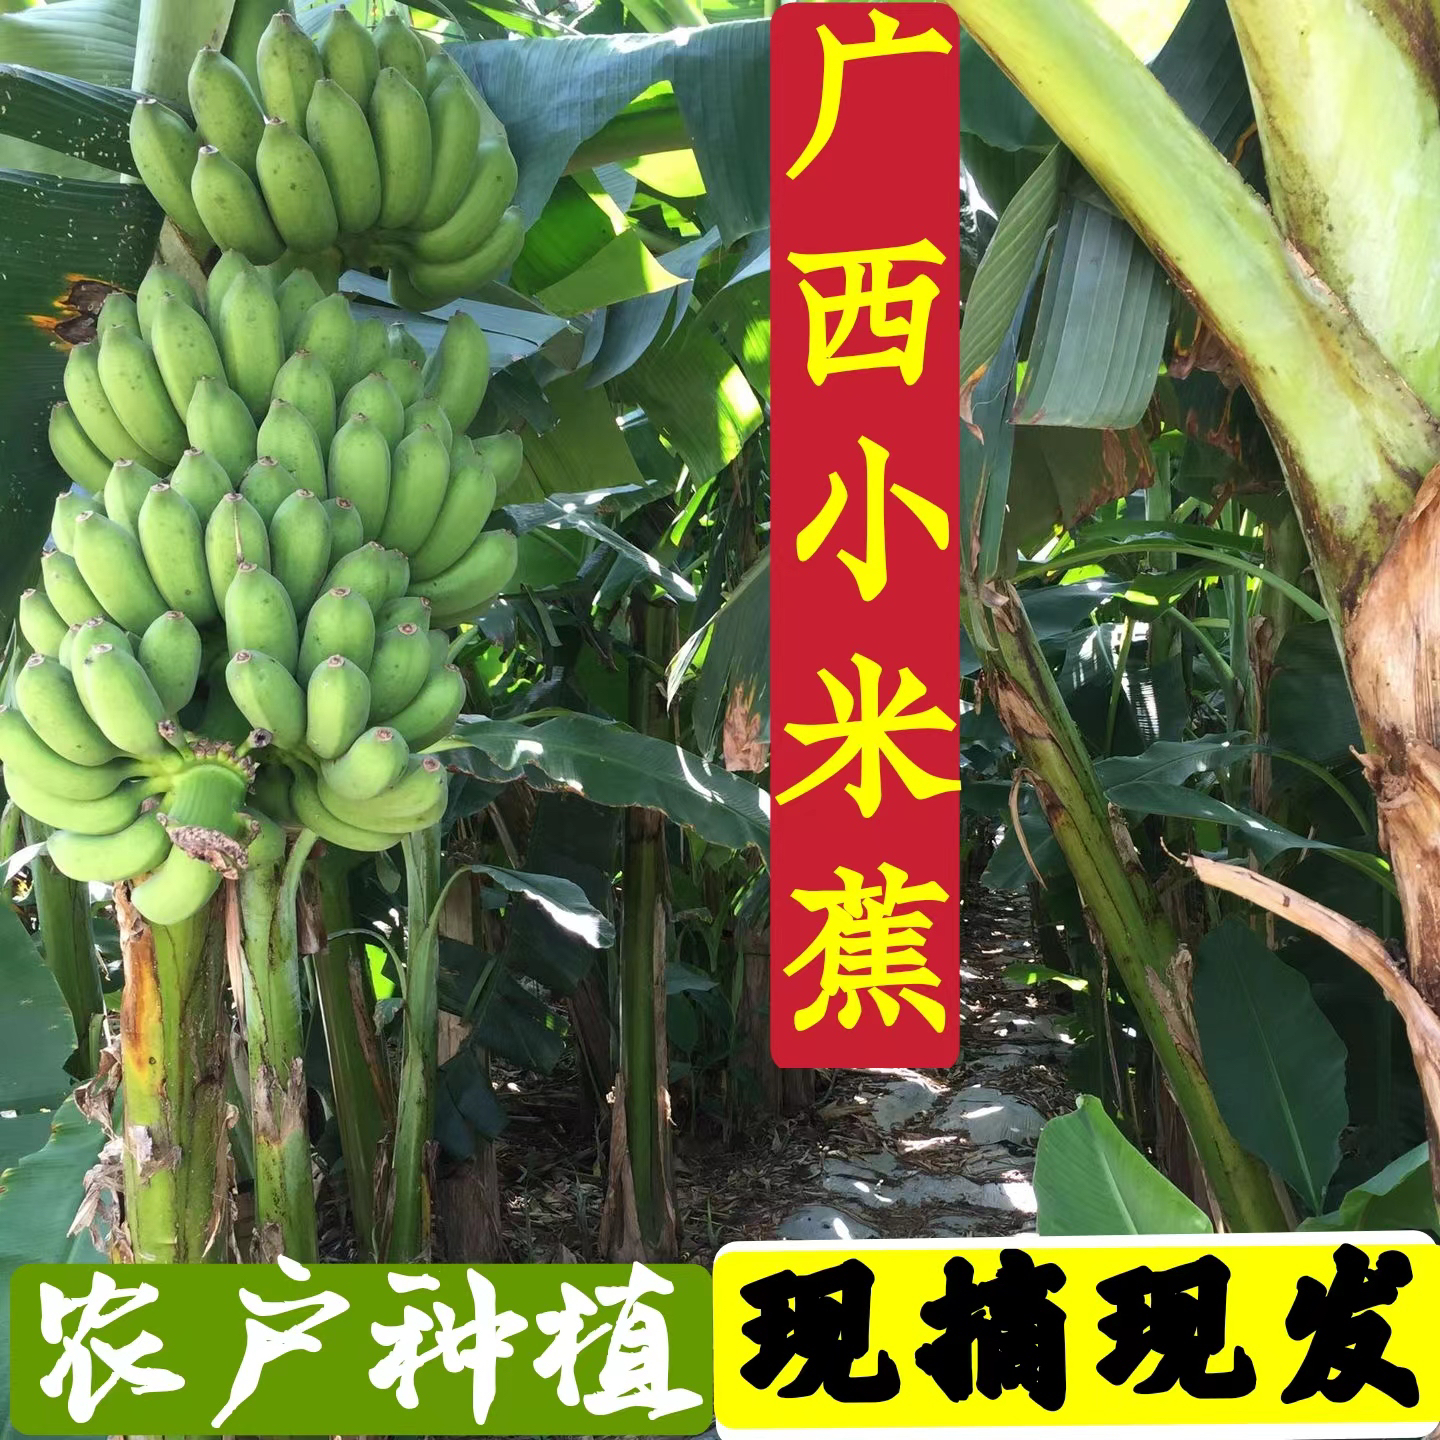 广西小米蕉南宁鸡蕉5 9斤酸甜爽口现摘现发原生态自然熟生青蕉